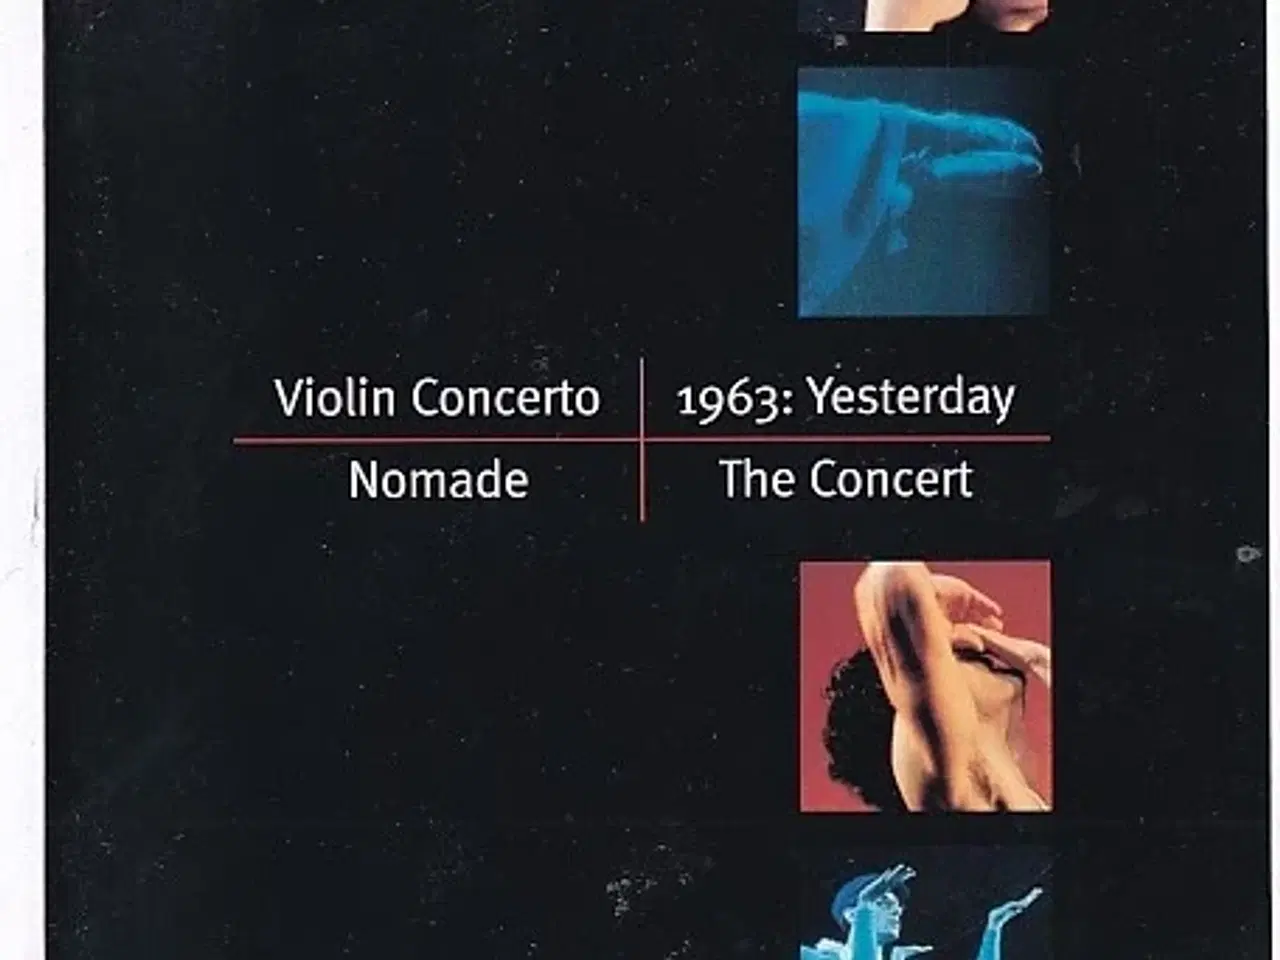 Billede 1 - Violin Concerto - Nomade - 1963: Yesterday  - Ballet 2001 - Det Kongelige Teater - Program A5 - Pæn